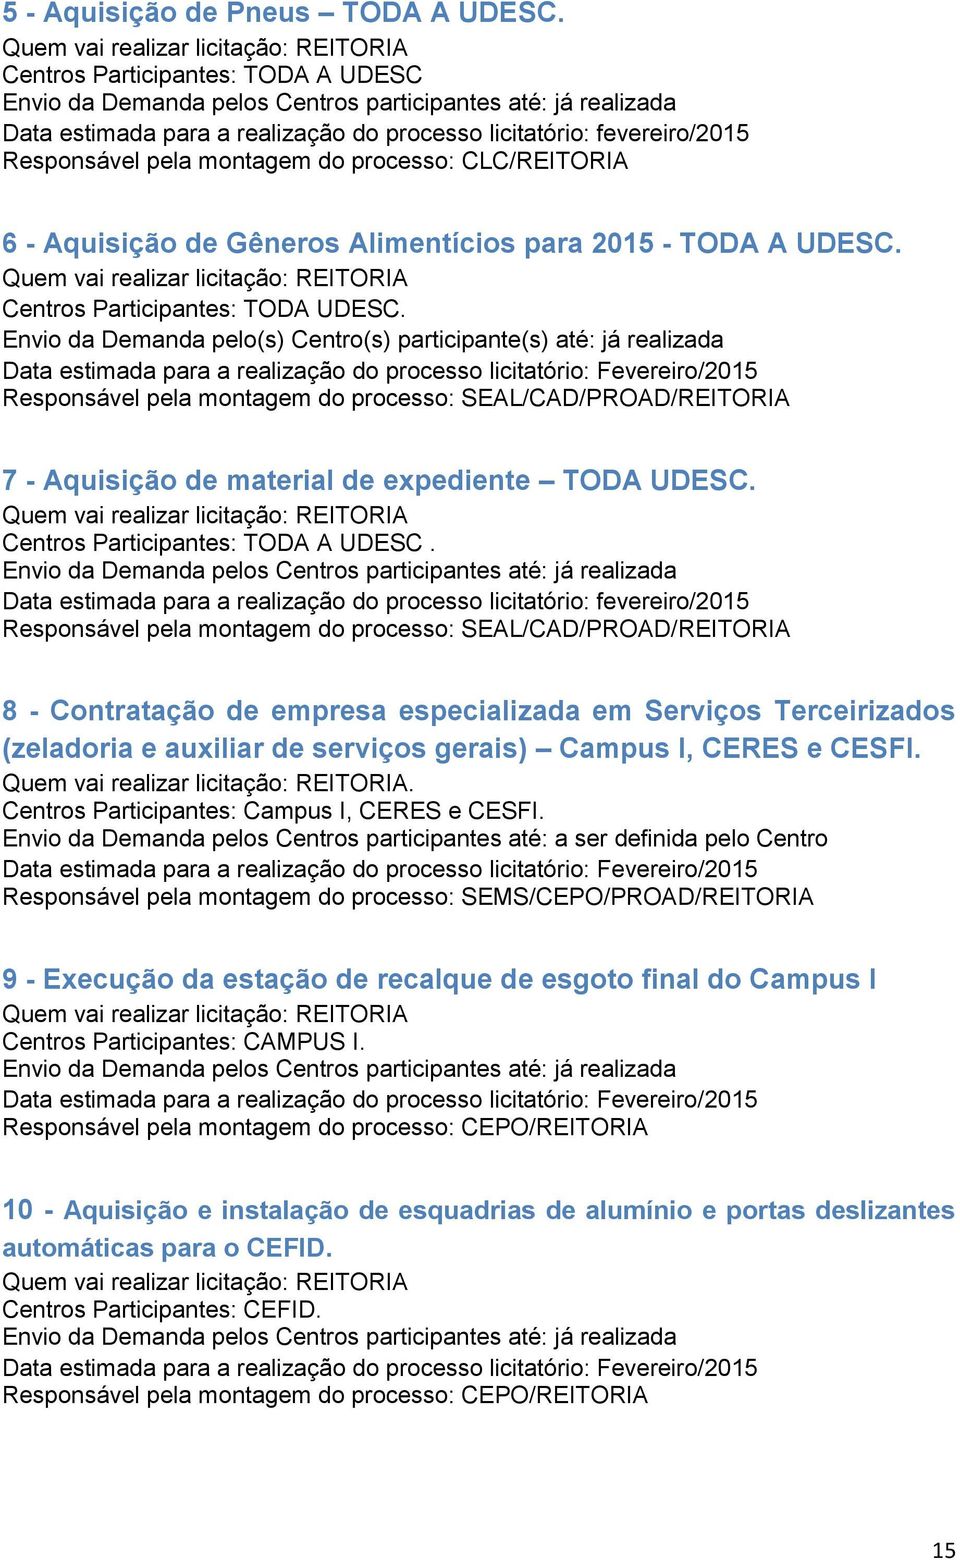 processo: CLC/REITORIA 6 - Aquisição de Gêneros Alimentícios para 2015 - TODA A UDESC. Centros Participantes: TODA UDESC.